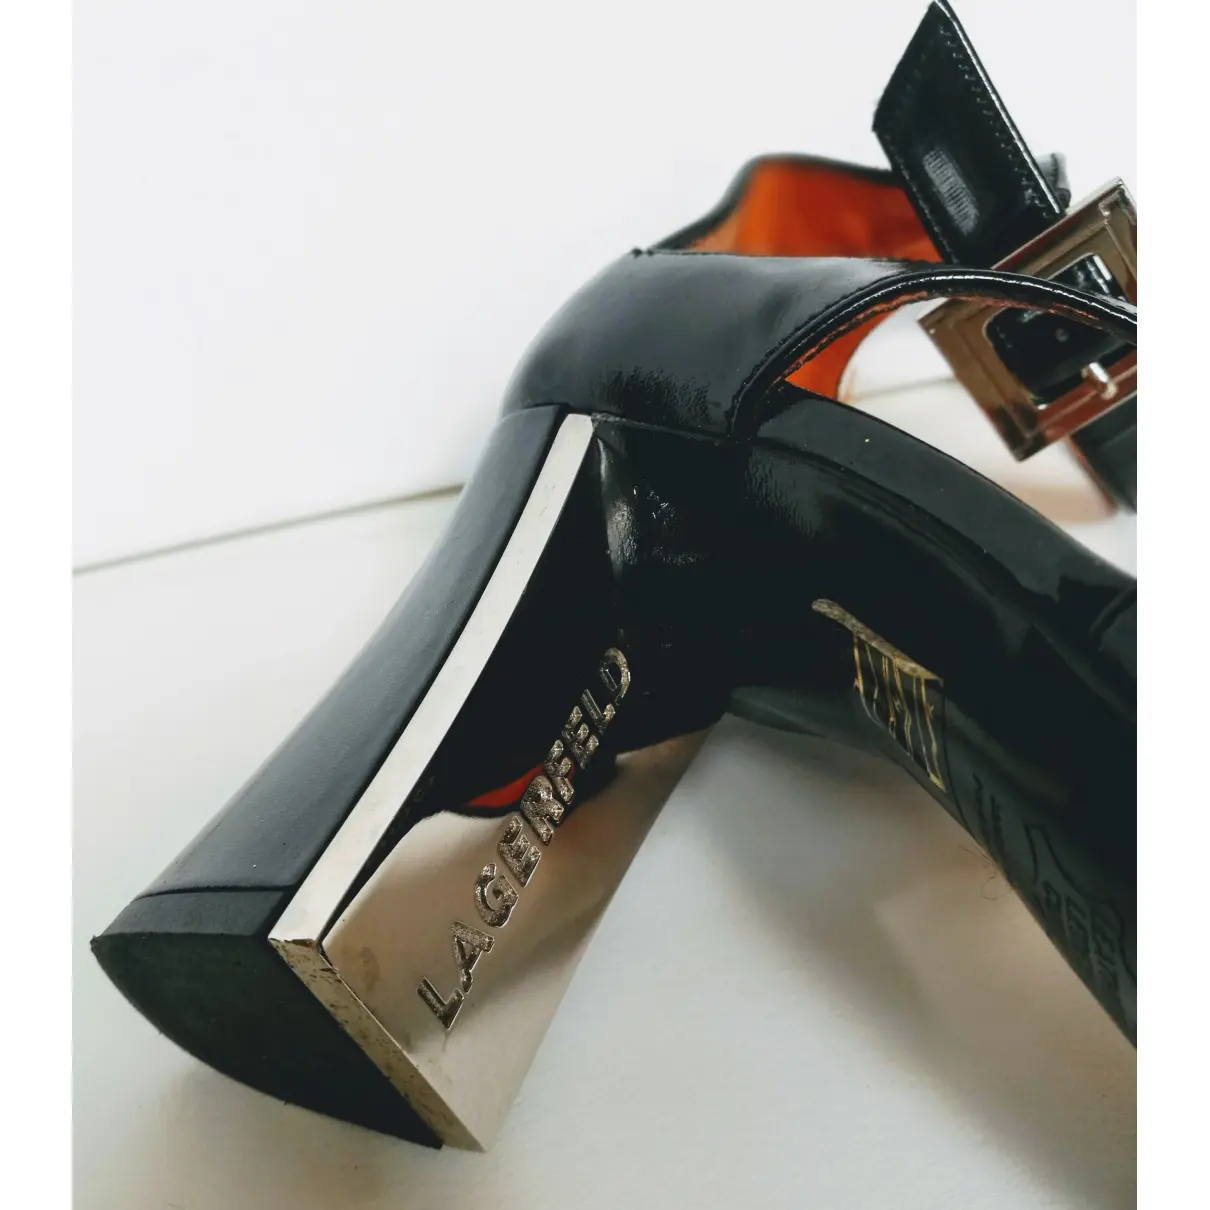 Leather heels Karl Lagerfeld